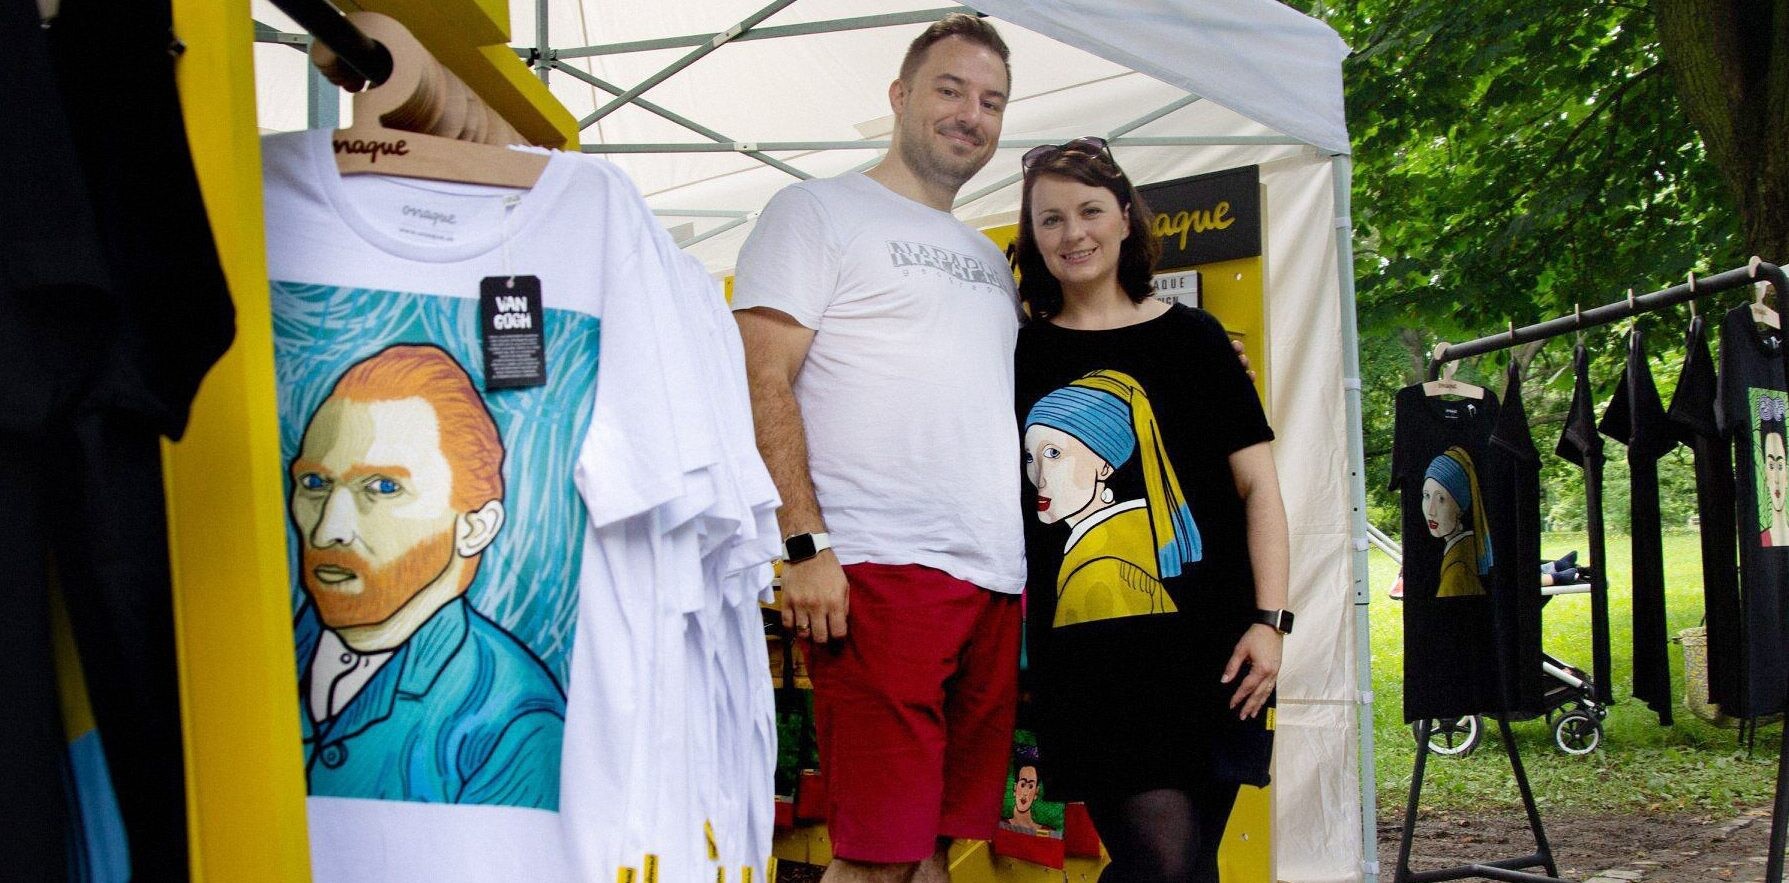 Manželia priniesli na trh tričká plné humoru. Uťahujú si z Jánošíka, Štúra i Fridy Kahlo